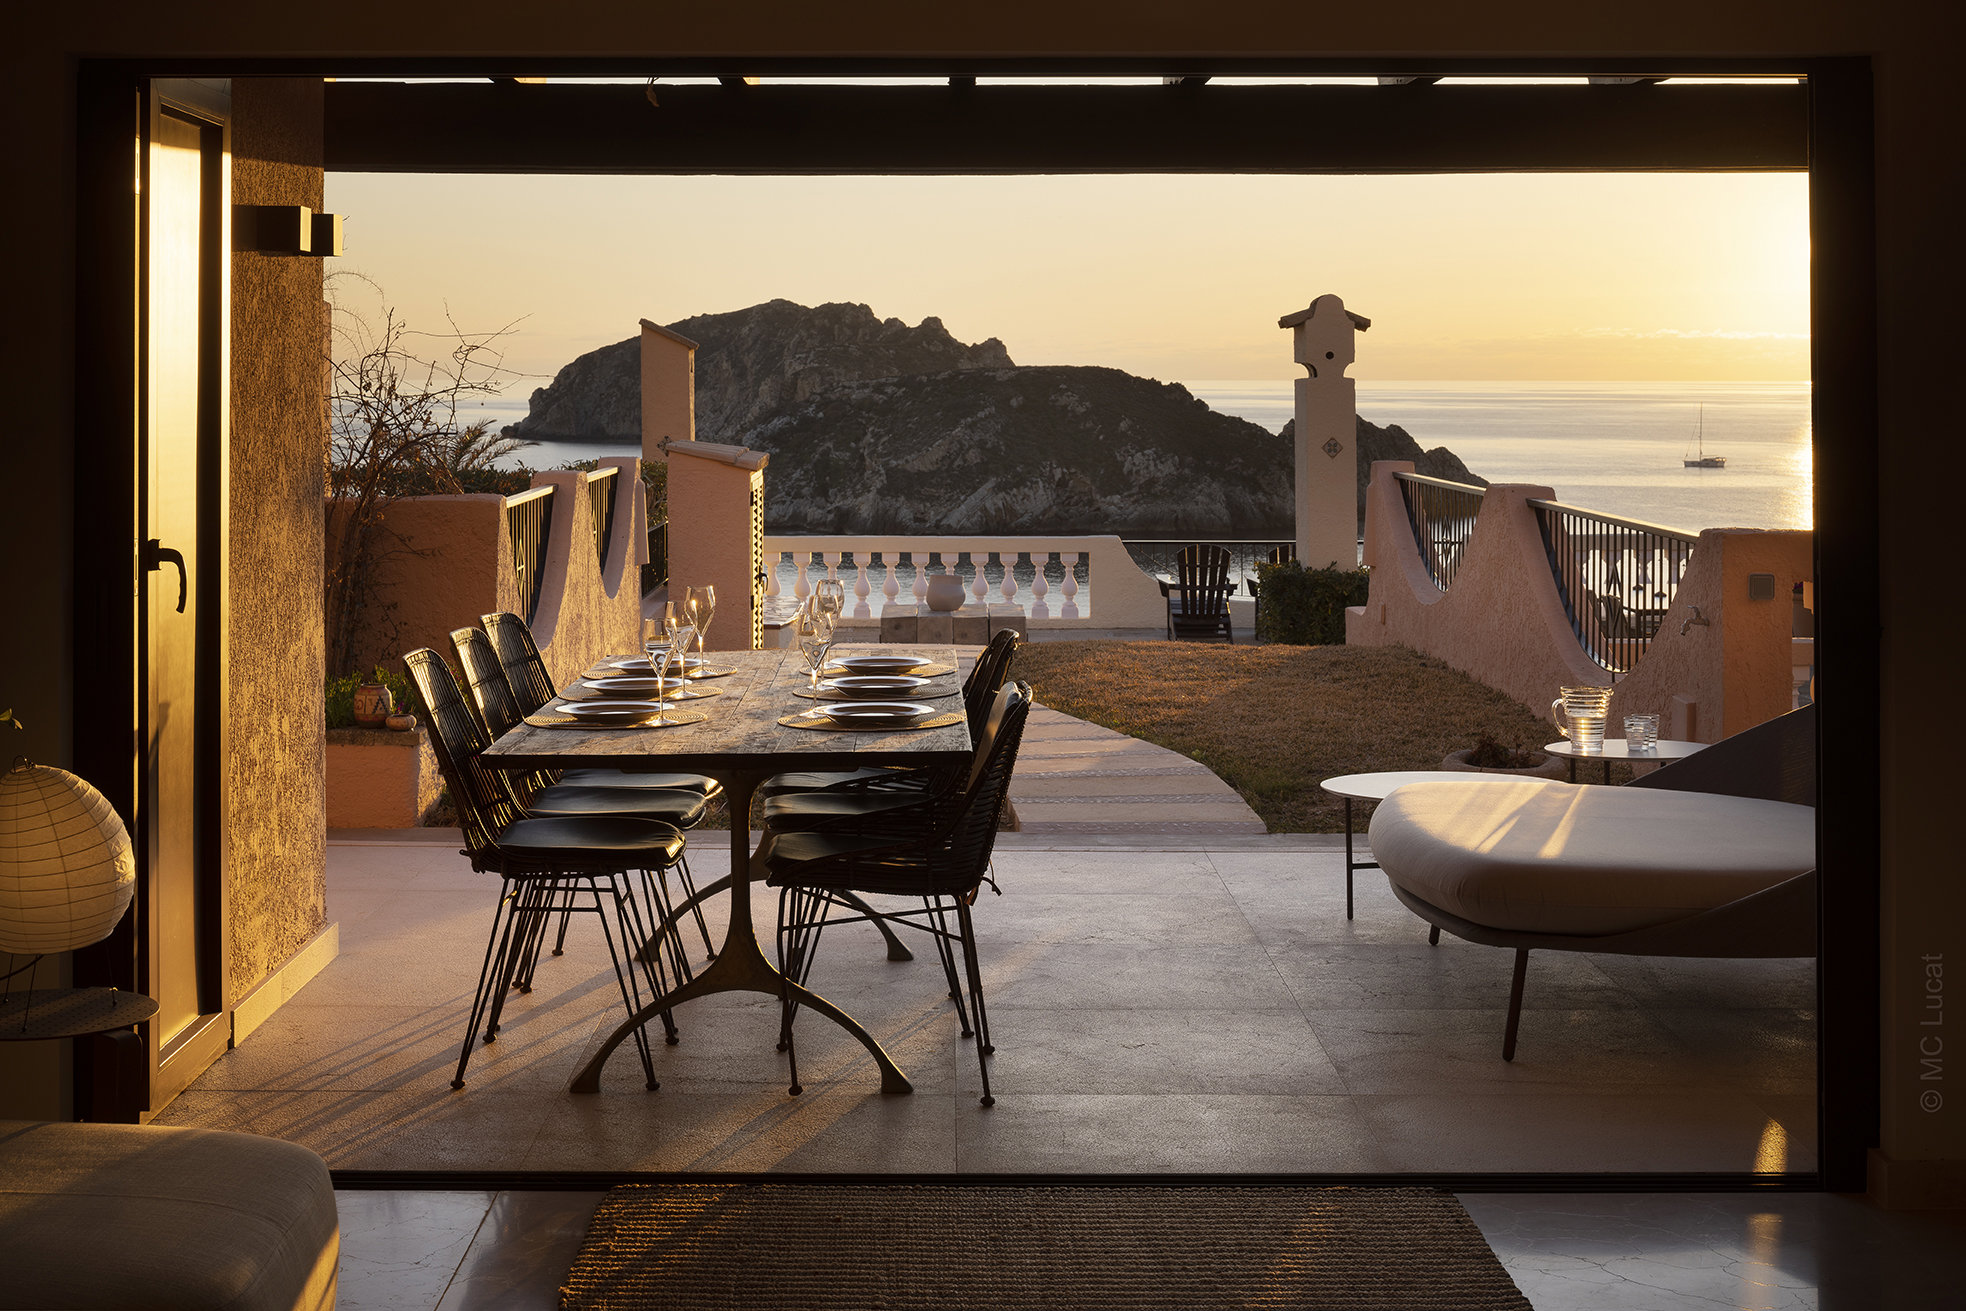 Los atardeceres sobre el mar desde la terraza son uno de los atractivos de este apartamento de Mallorca.